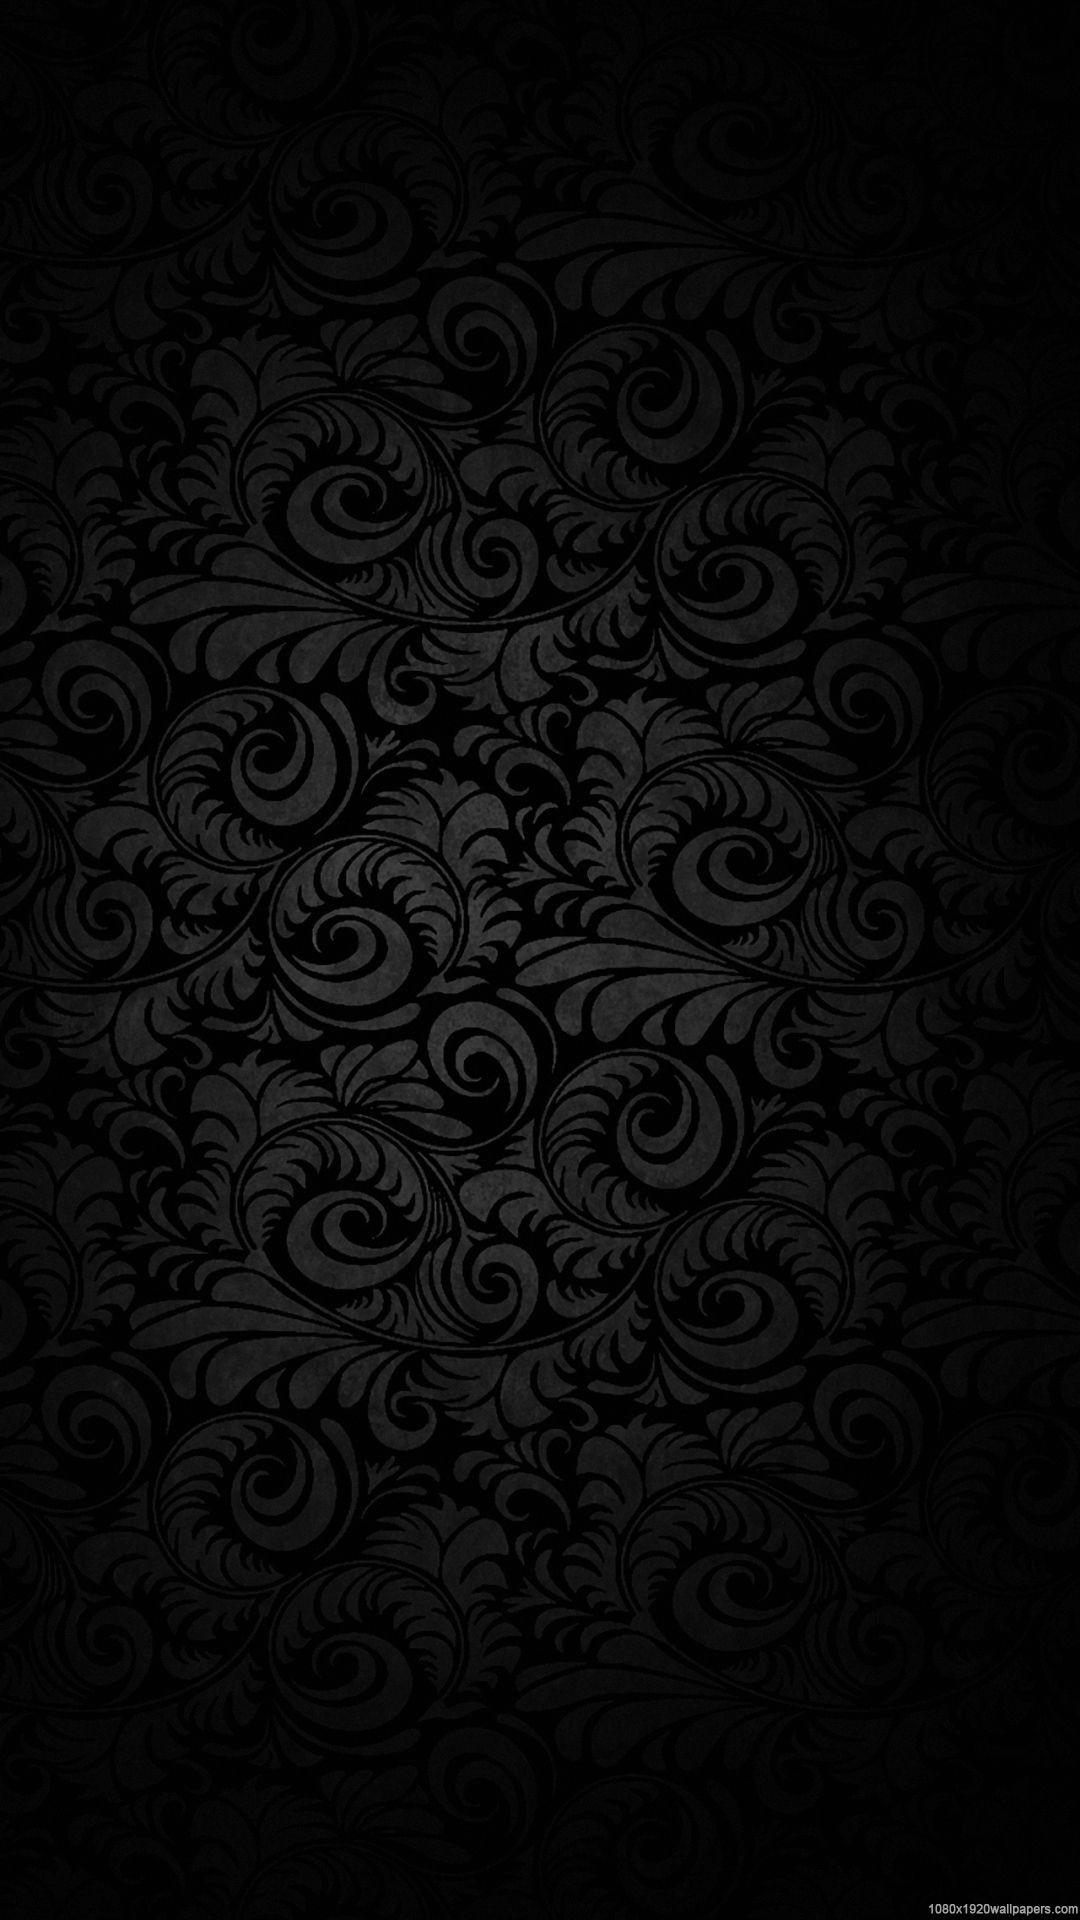 Dark 1080p Mobile Wallpapers - Wallpaper Cave